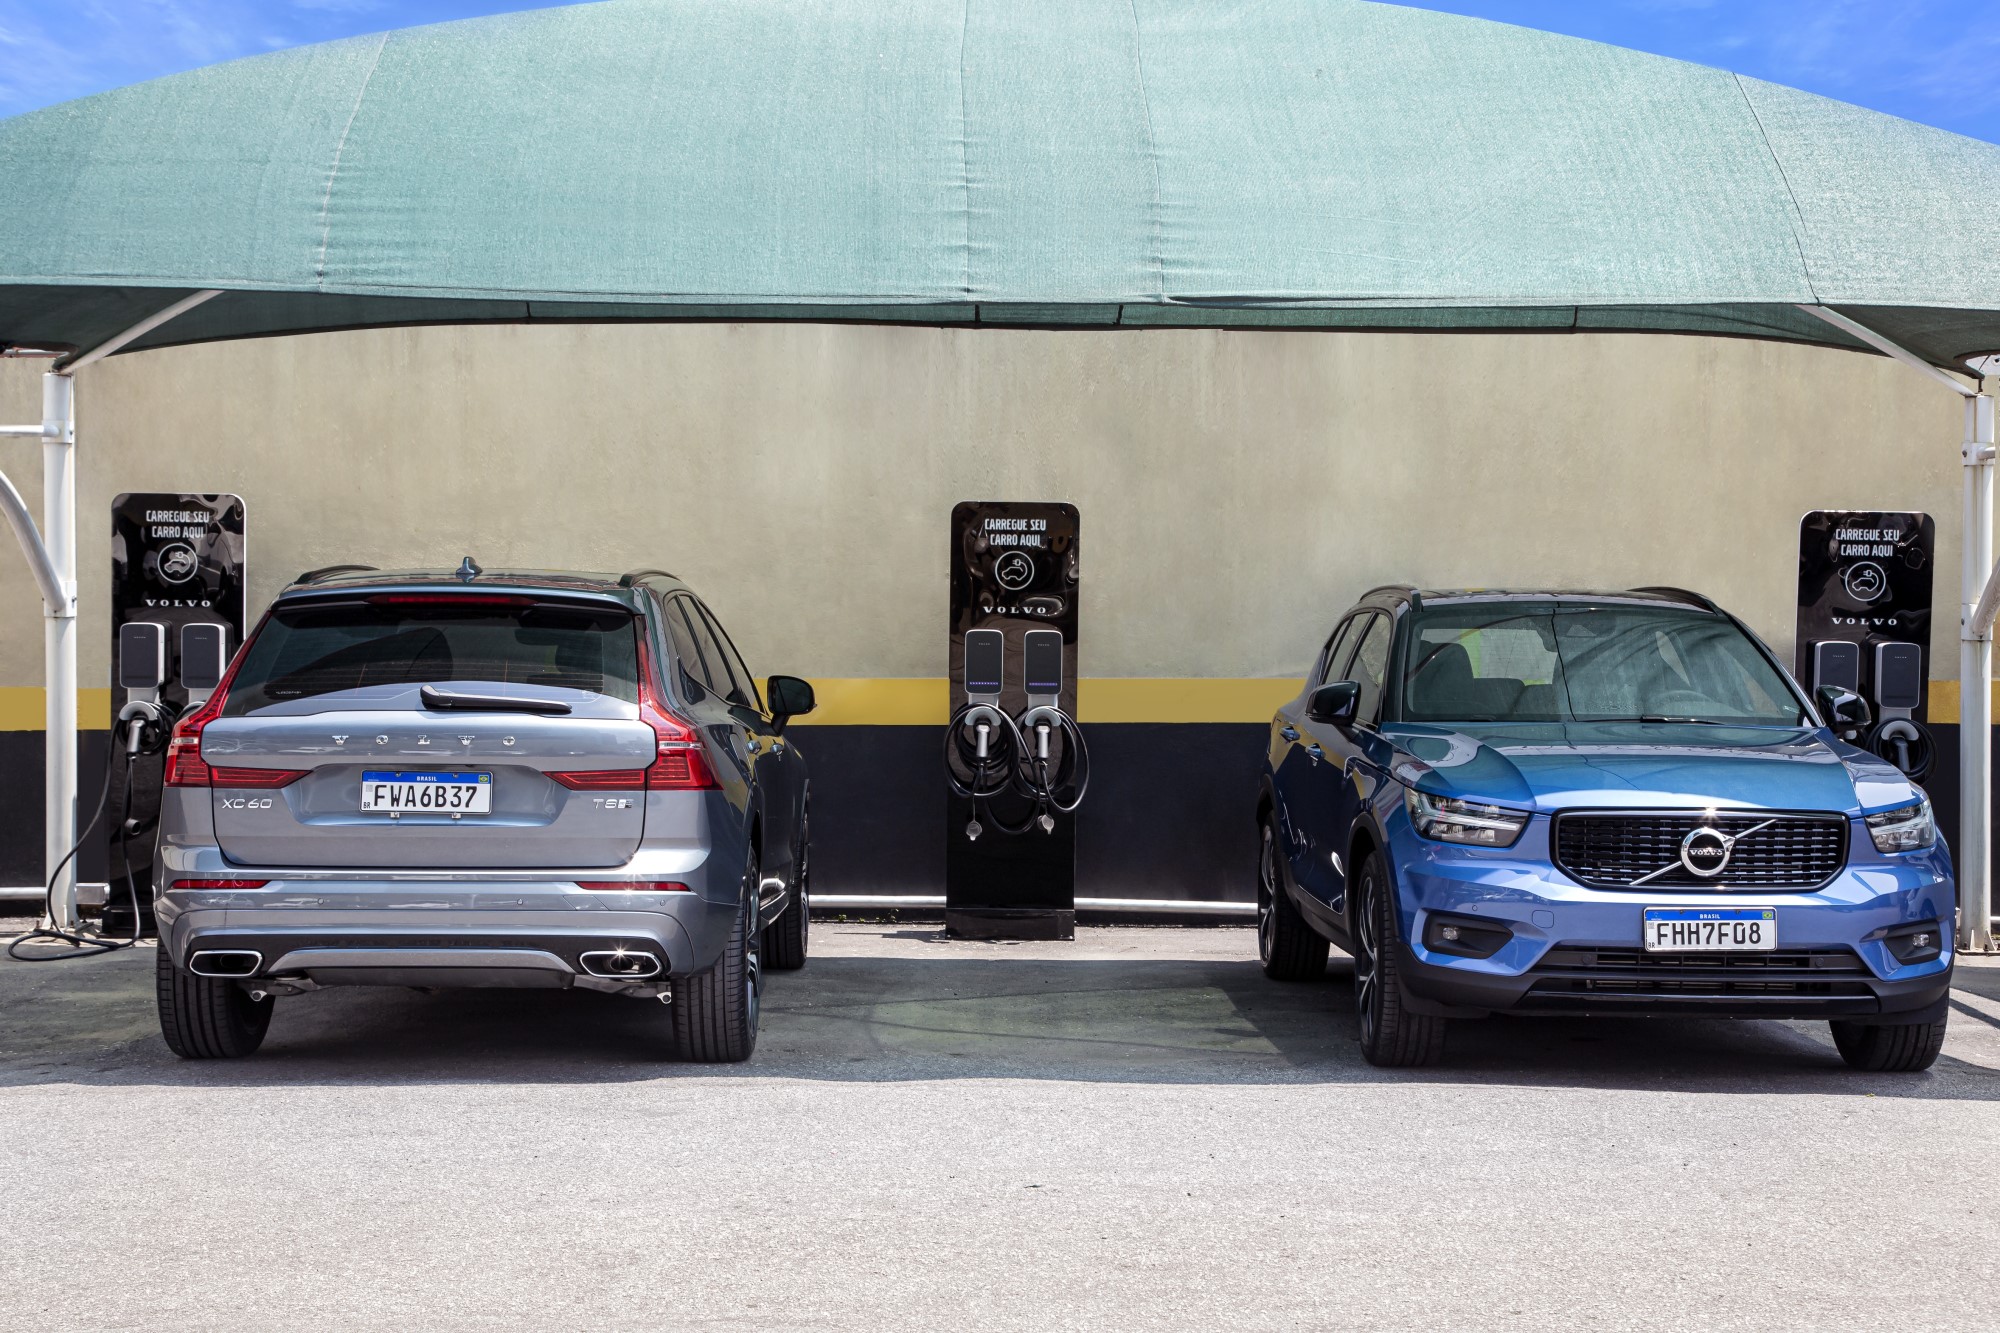 Em São Paulo, o primeiro estacionamento para carros eletrificados